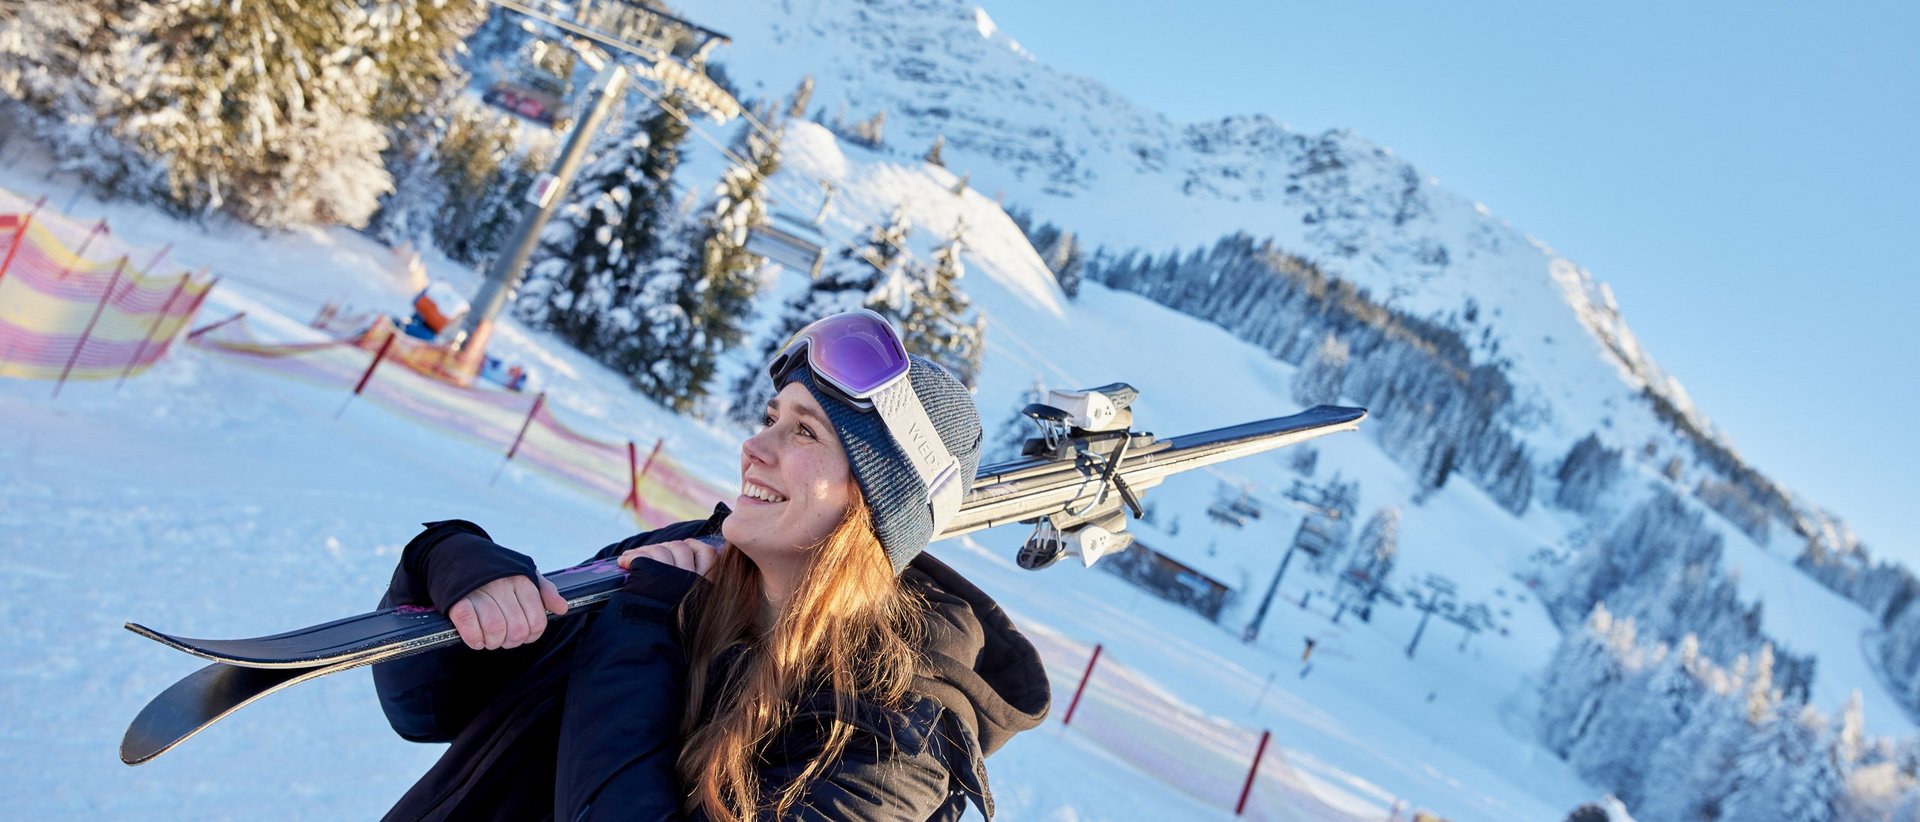 Ferienwohnung am Skigebiet: Winterspaß garantiert